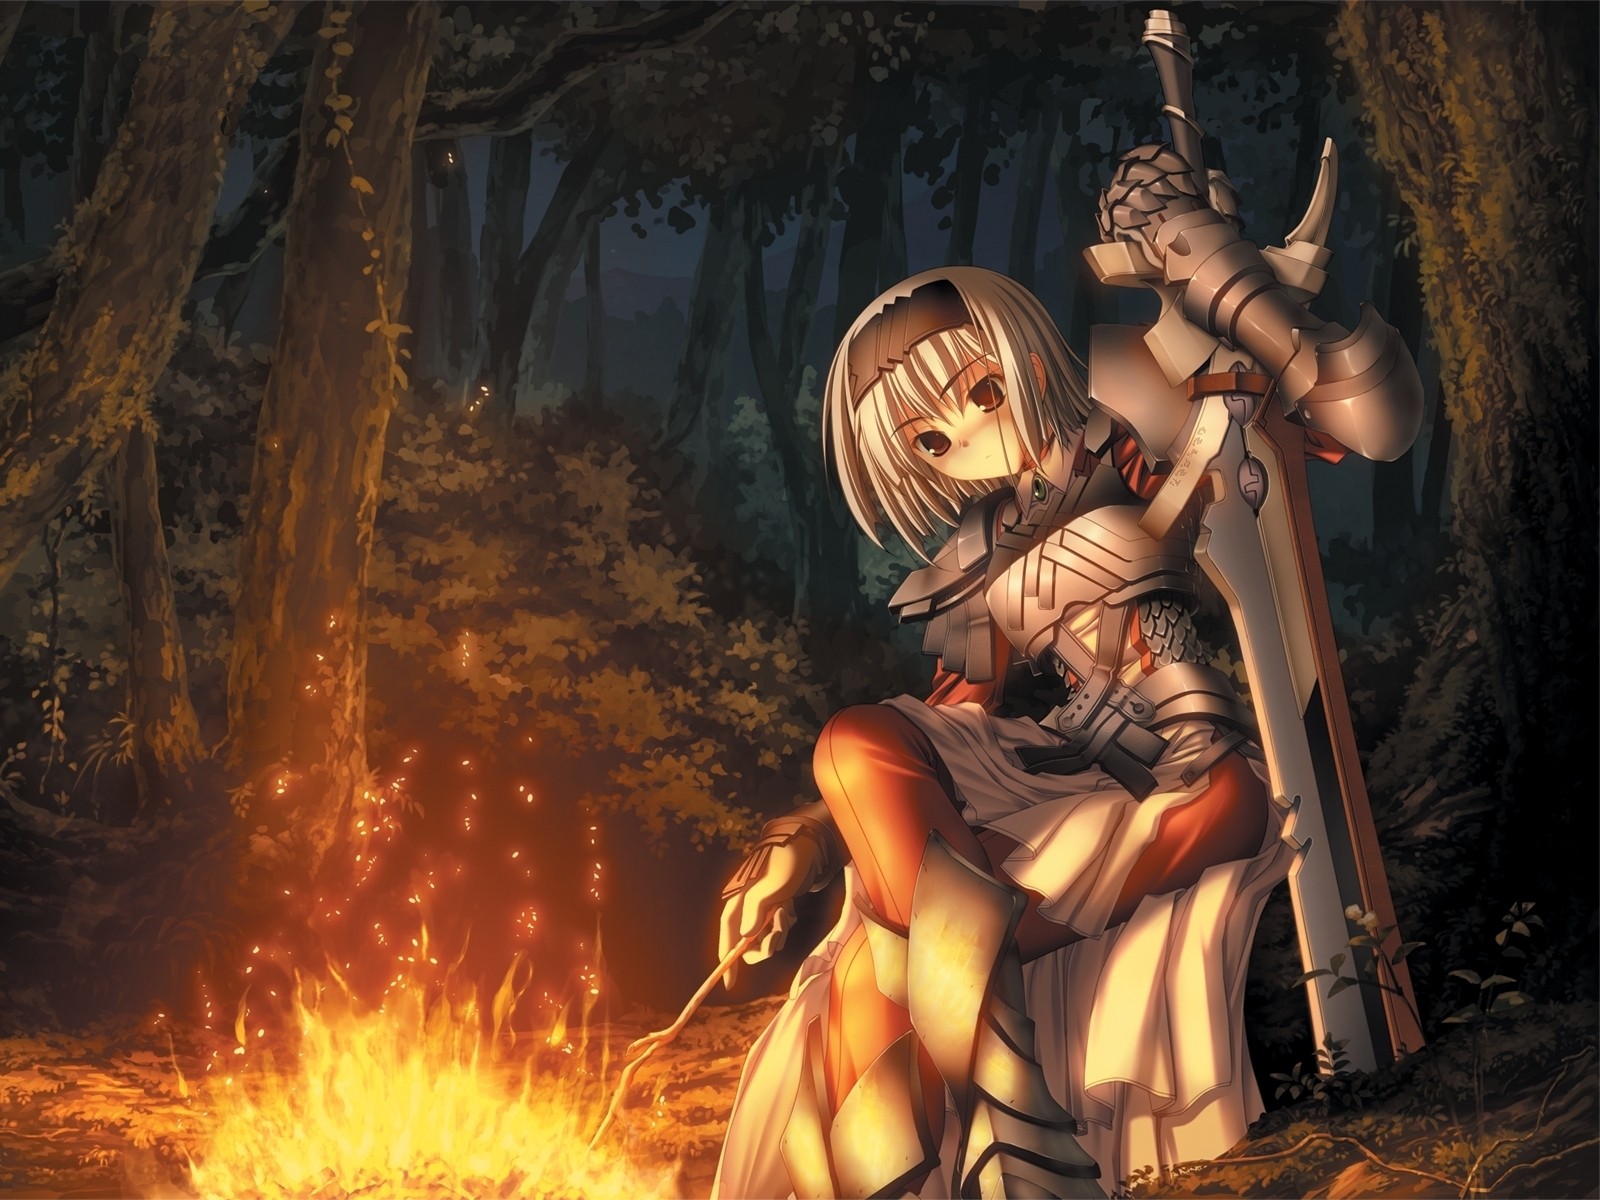 Anime 1600x1200 anime girls fantasy girl fire warrior sword fantasy art forest anime fantasy armor